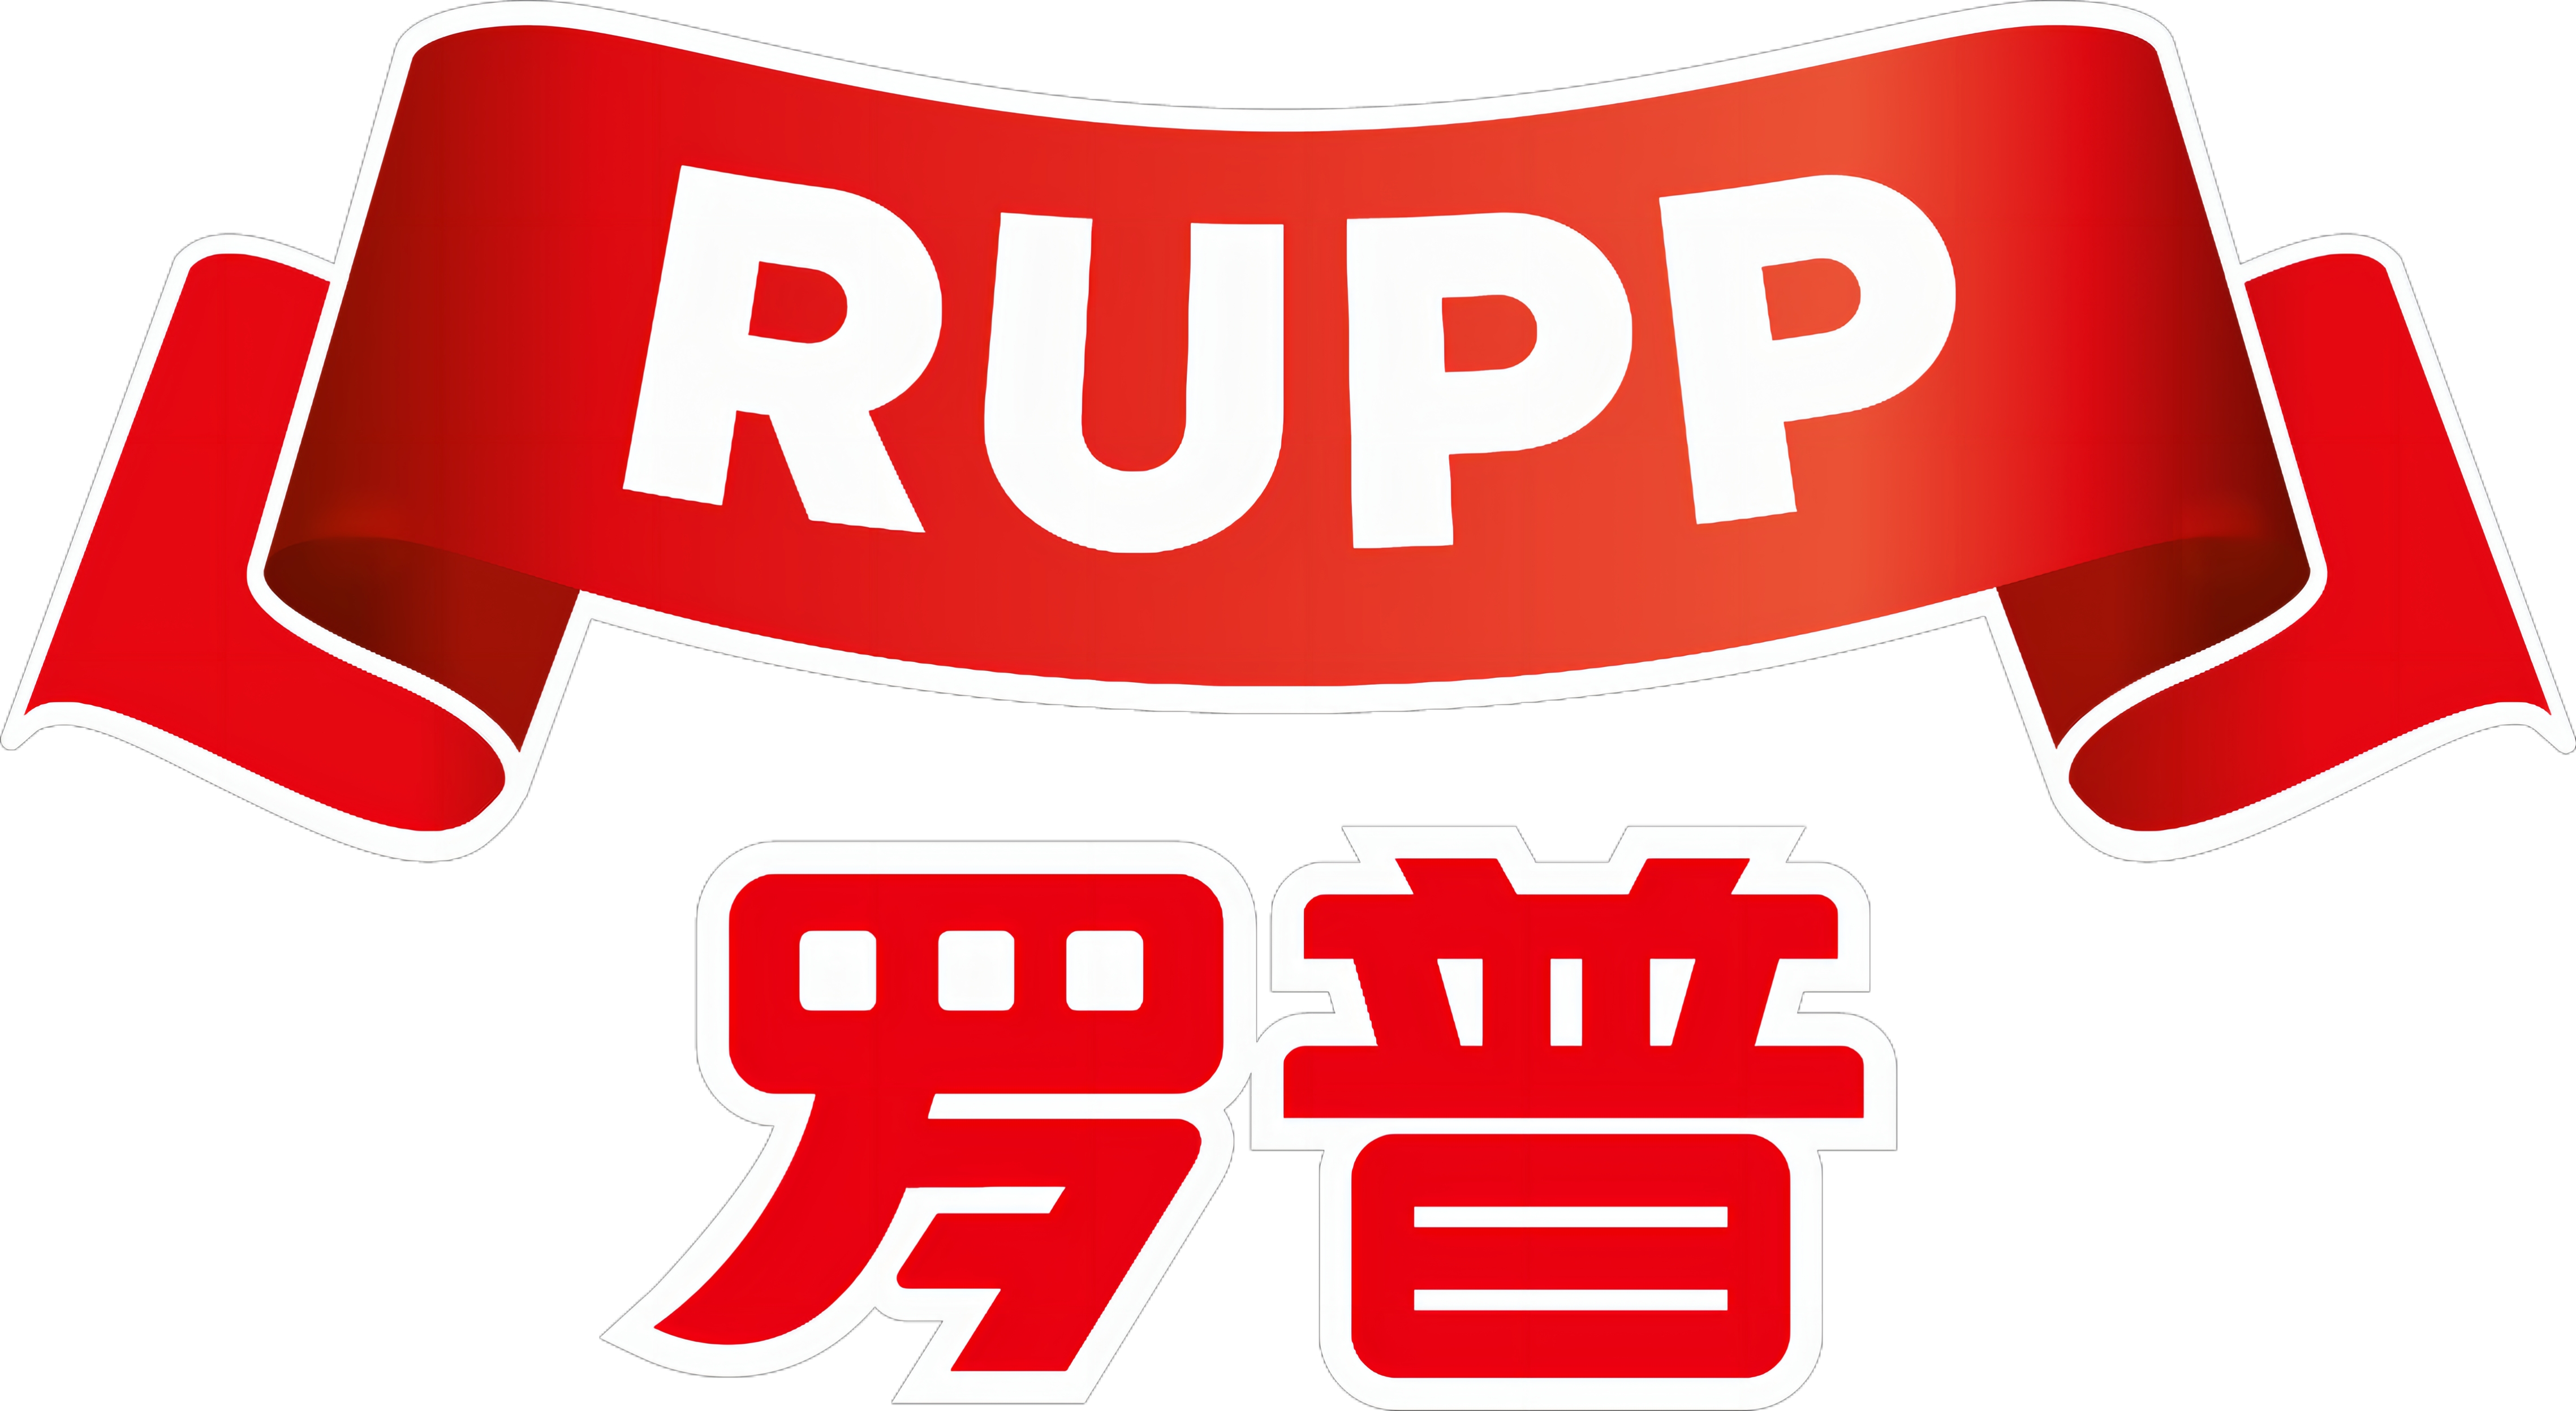 Rupp Austria GmbH